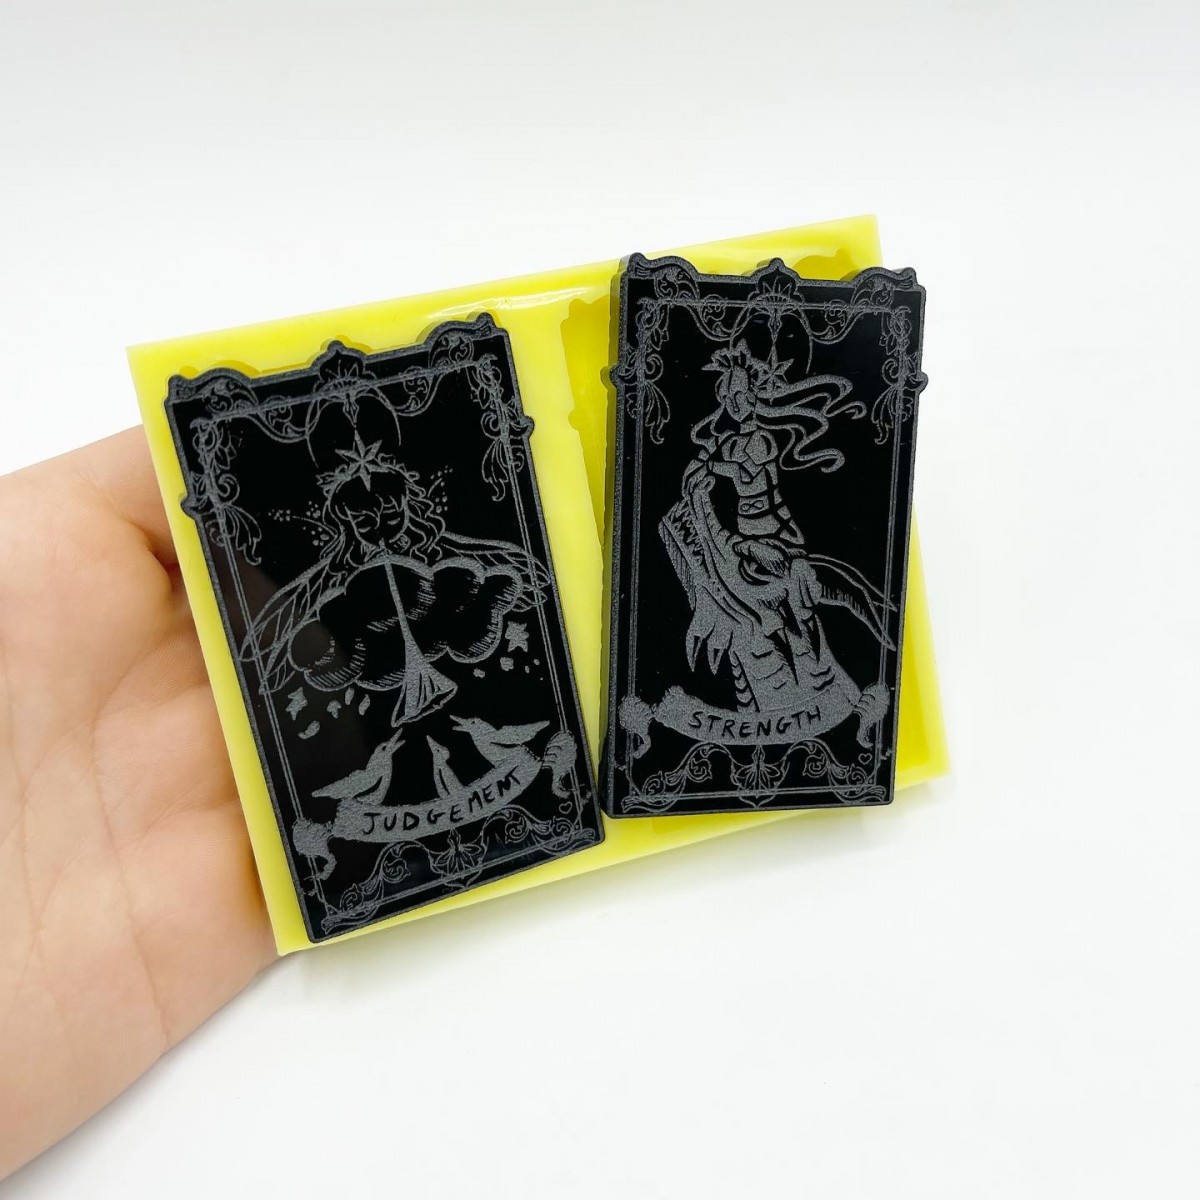 Set of "Strength" and "Judgement" Tarot Cards Mold - medium size